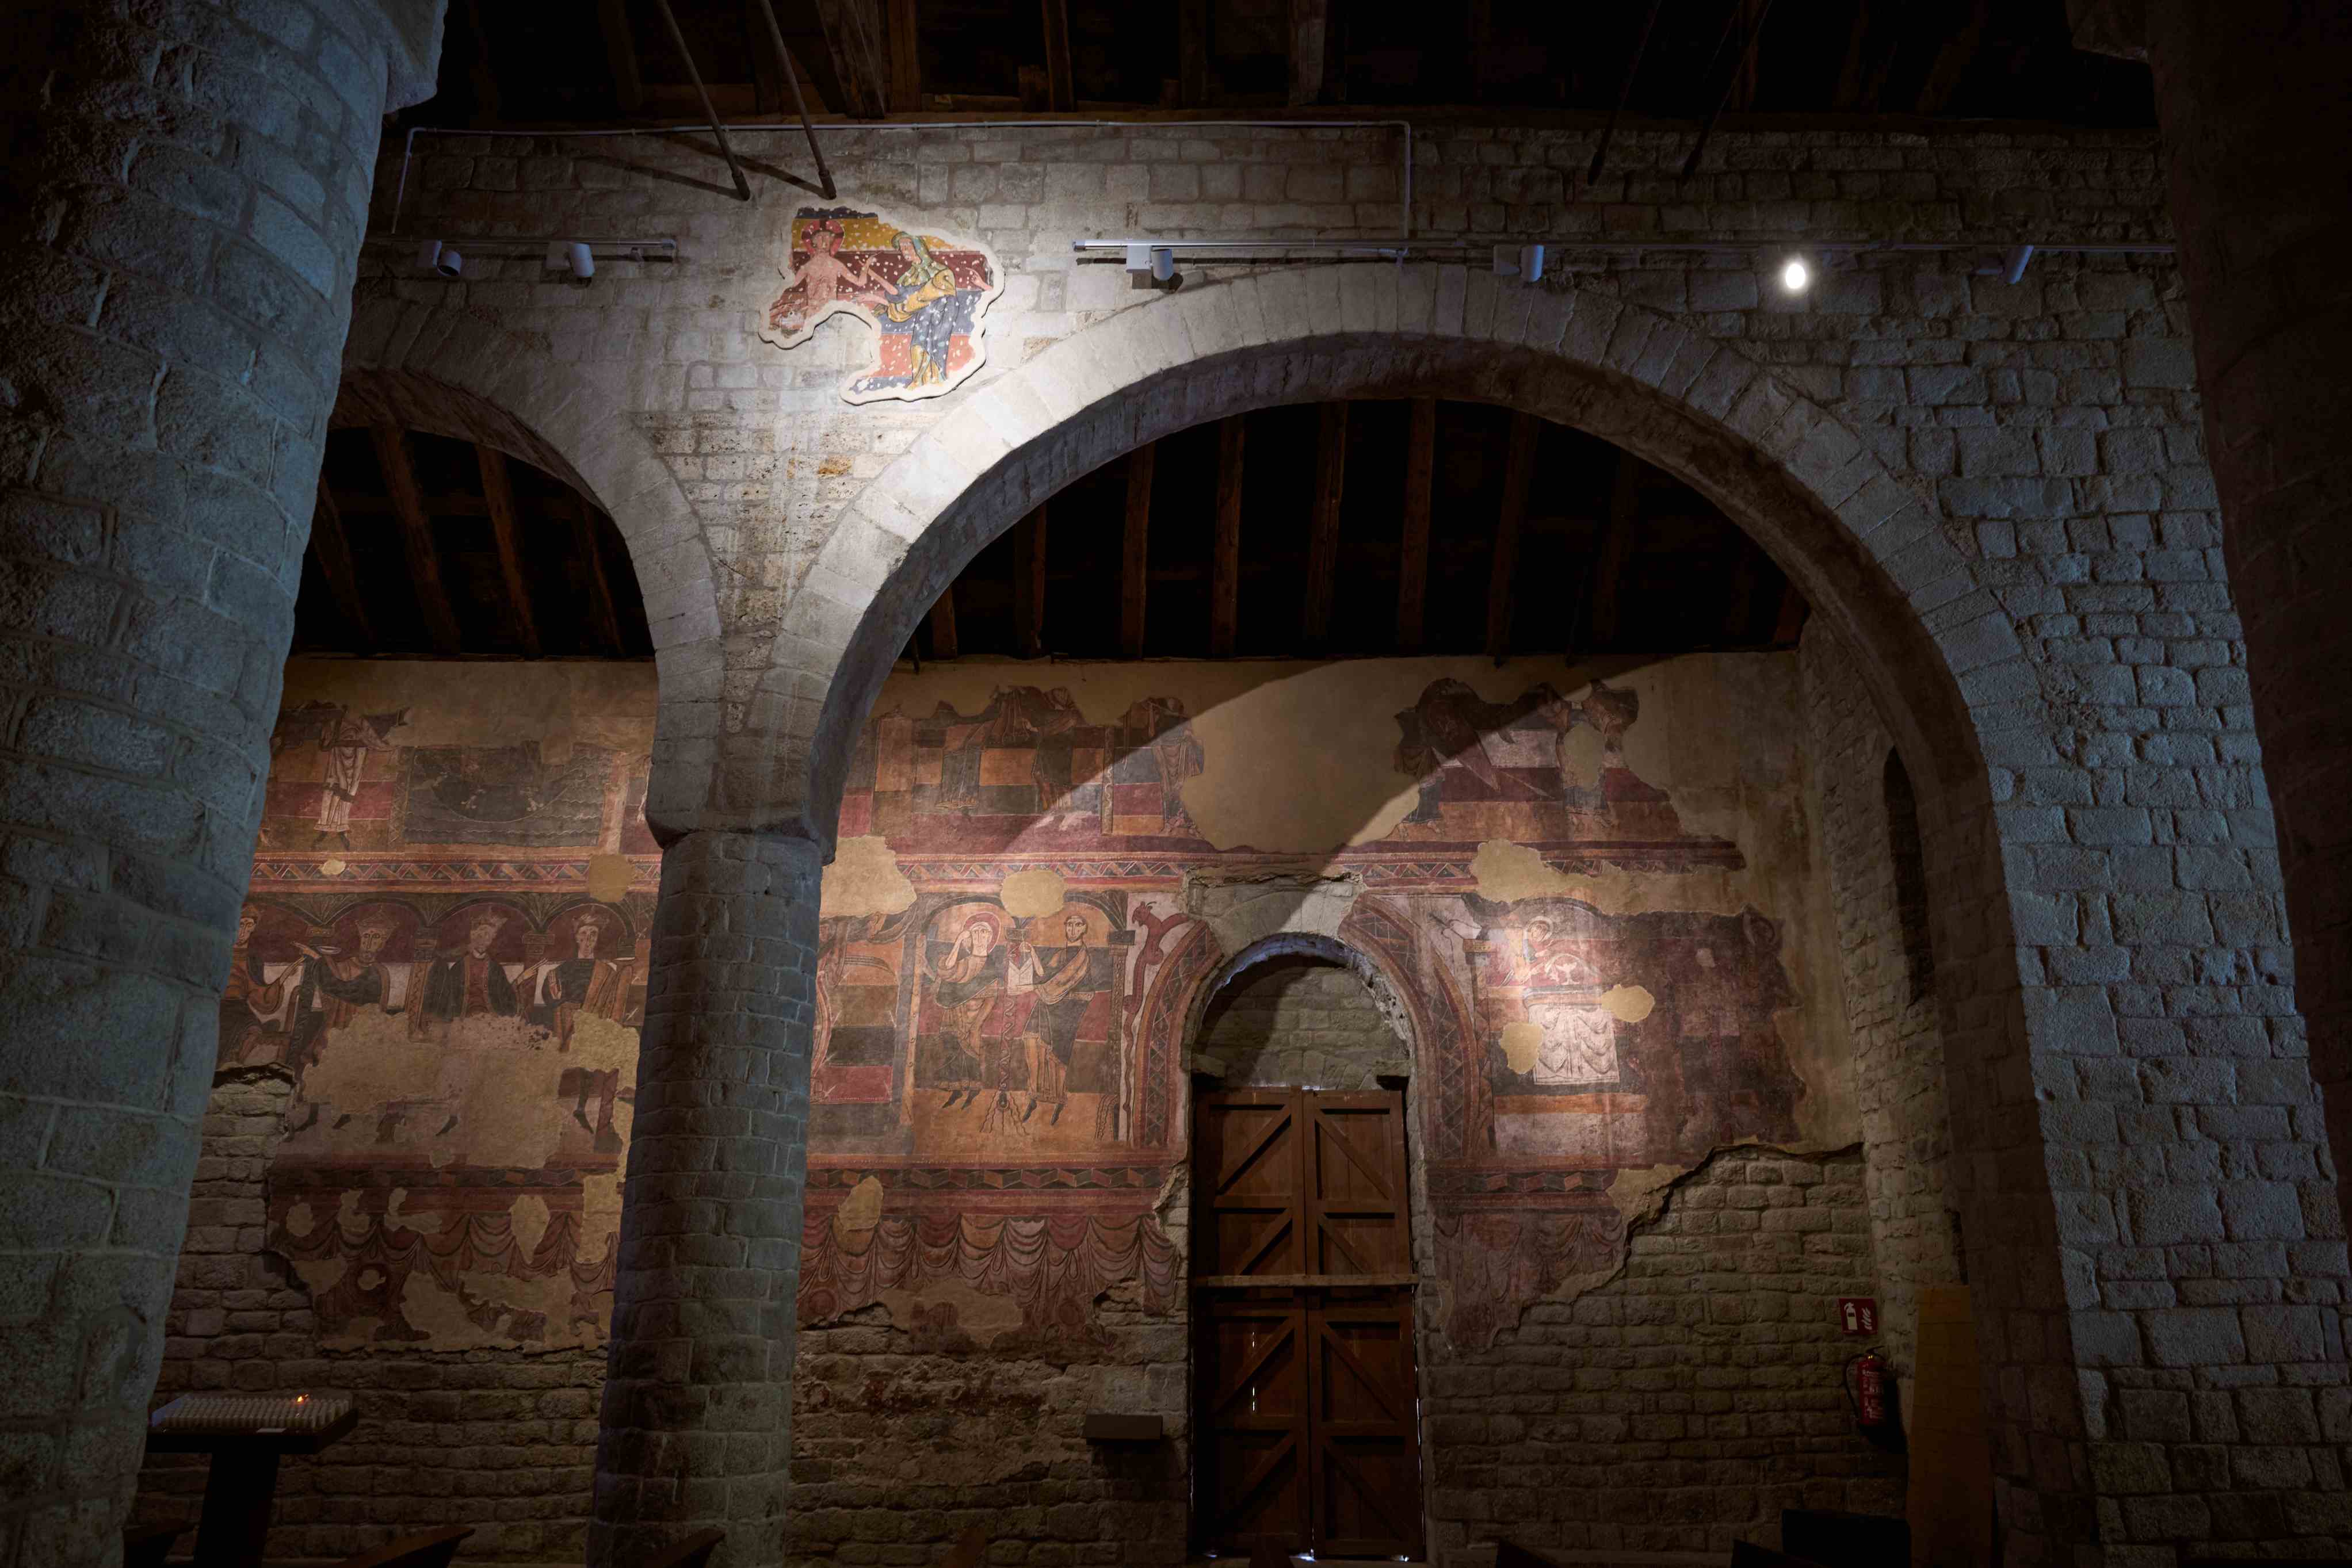 Imagen del artículo Restaurat un fragment de pintura mural romànica amb una escena de El Bany de Jesús de Santa Maria de Taüll